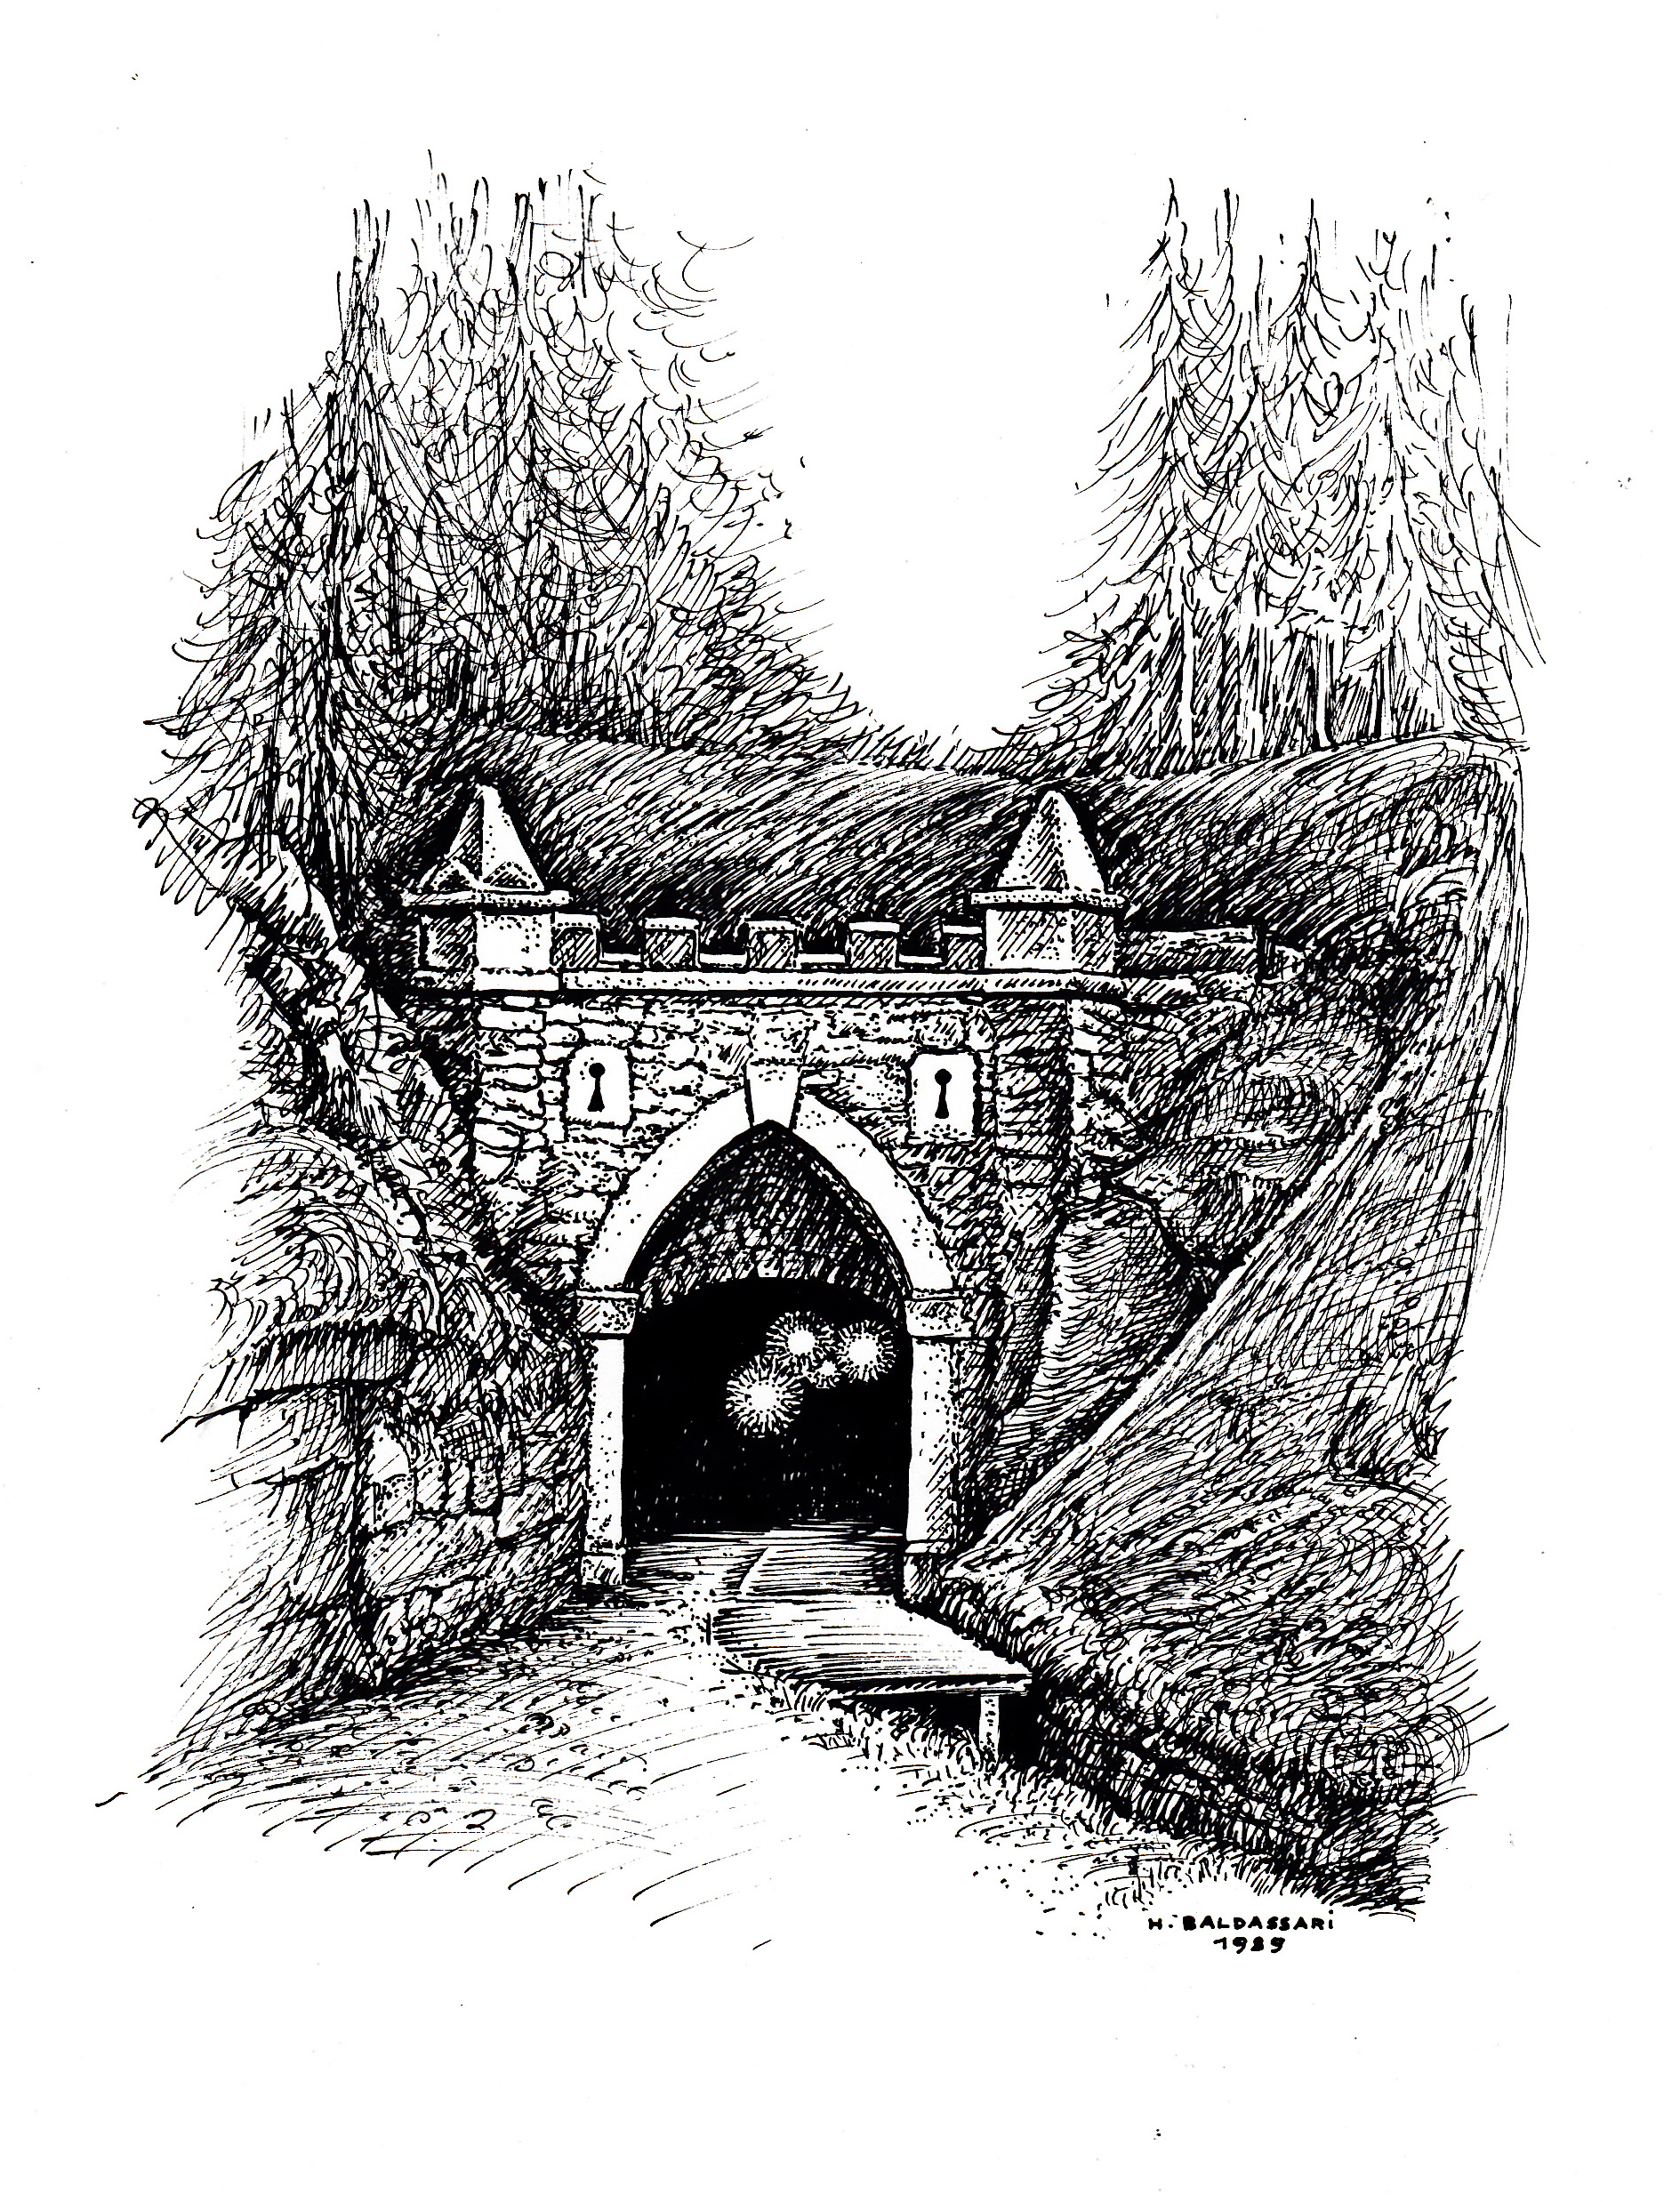 Kresba Herminy Baldassari - horní portál plavebního tunelu v době rekonstrukce, kdy byl tunel osvětlen, Böhmerwaldmuseum Passau 